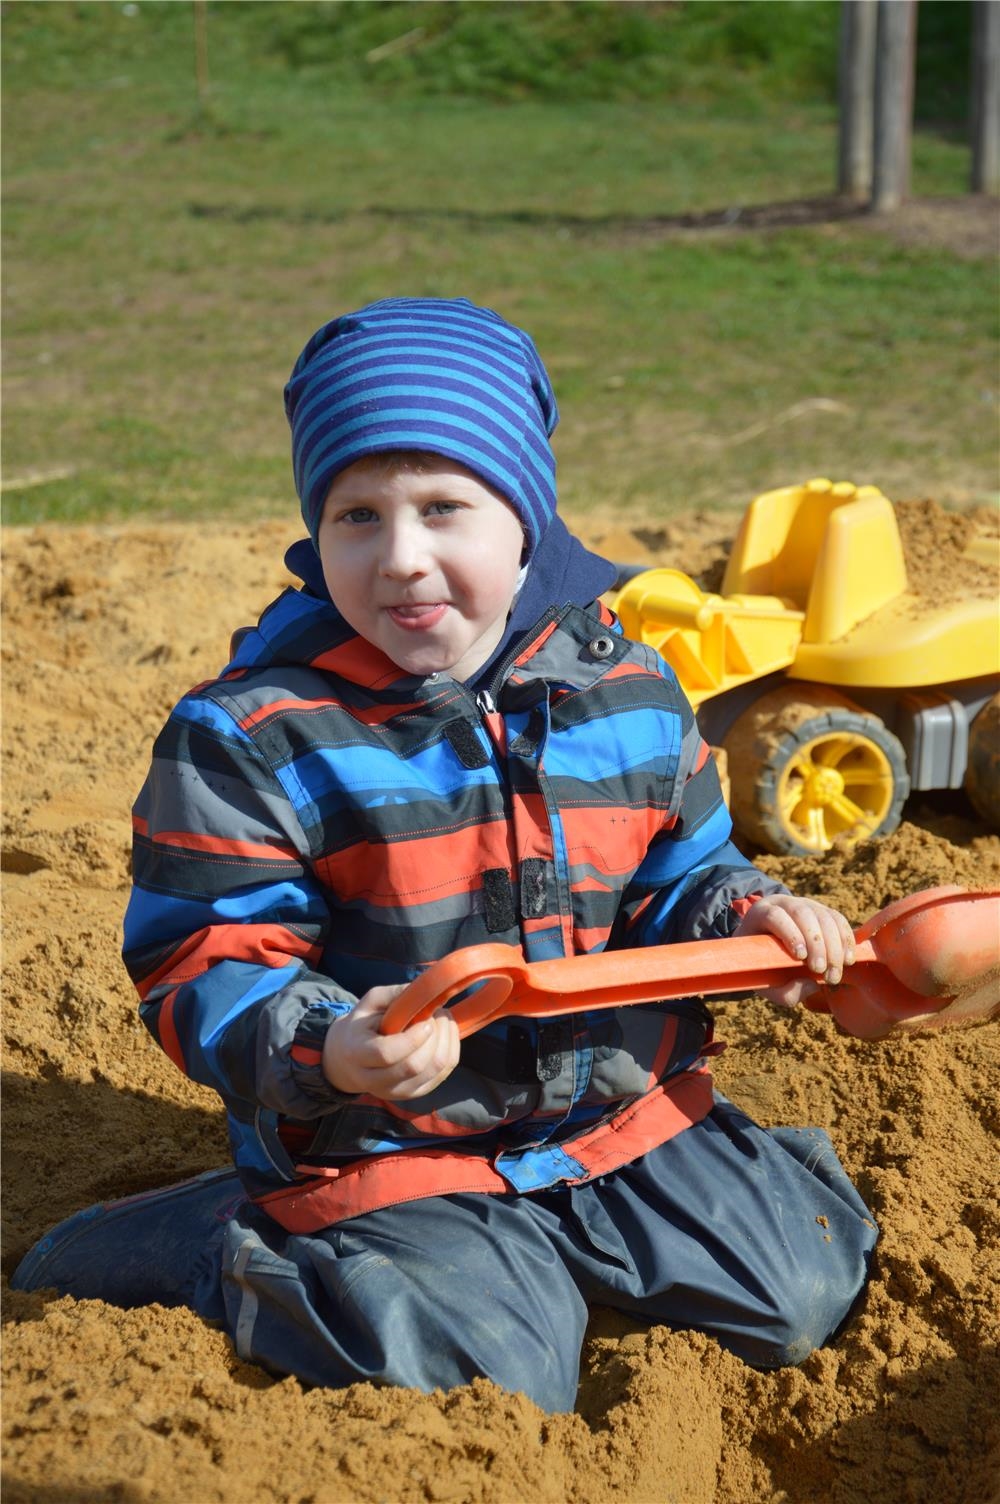 Ein Junge kniet im Sandkasten und hält eine Schaufel in den Händen. (Caritasverband Trier e. V.)